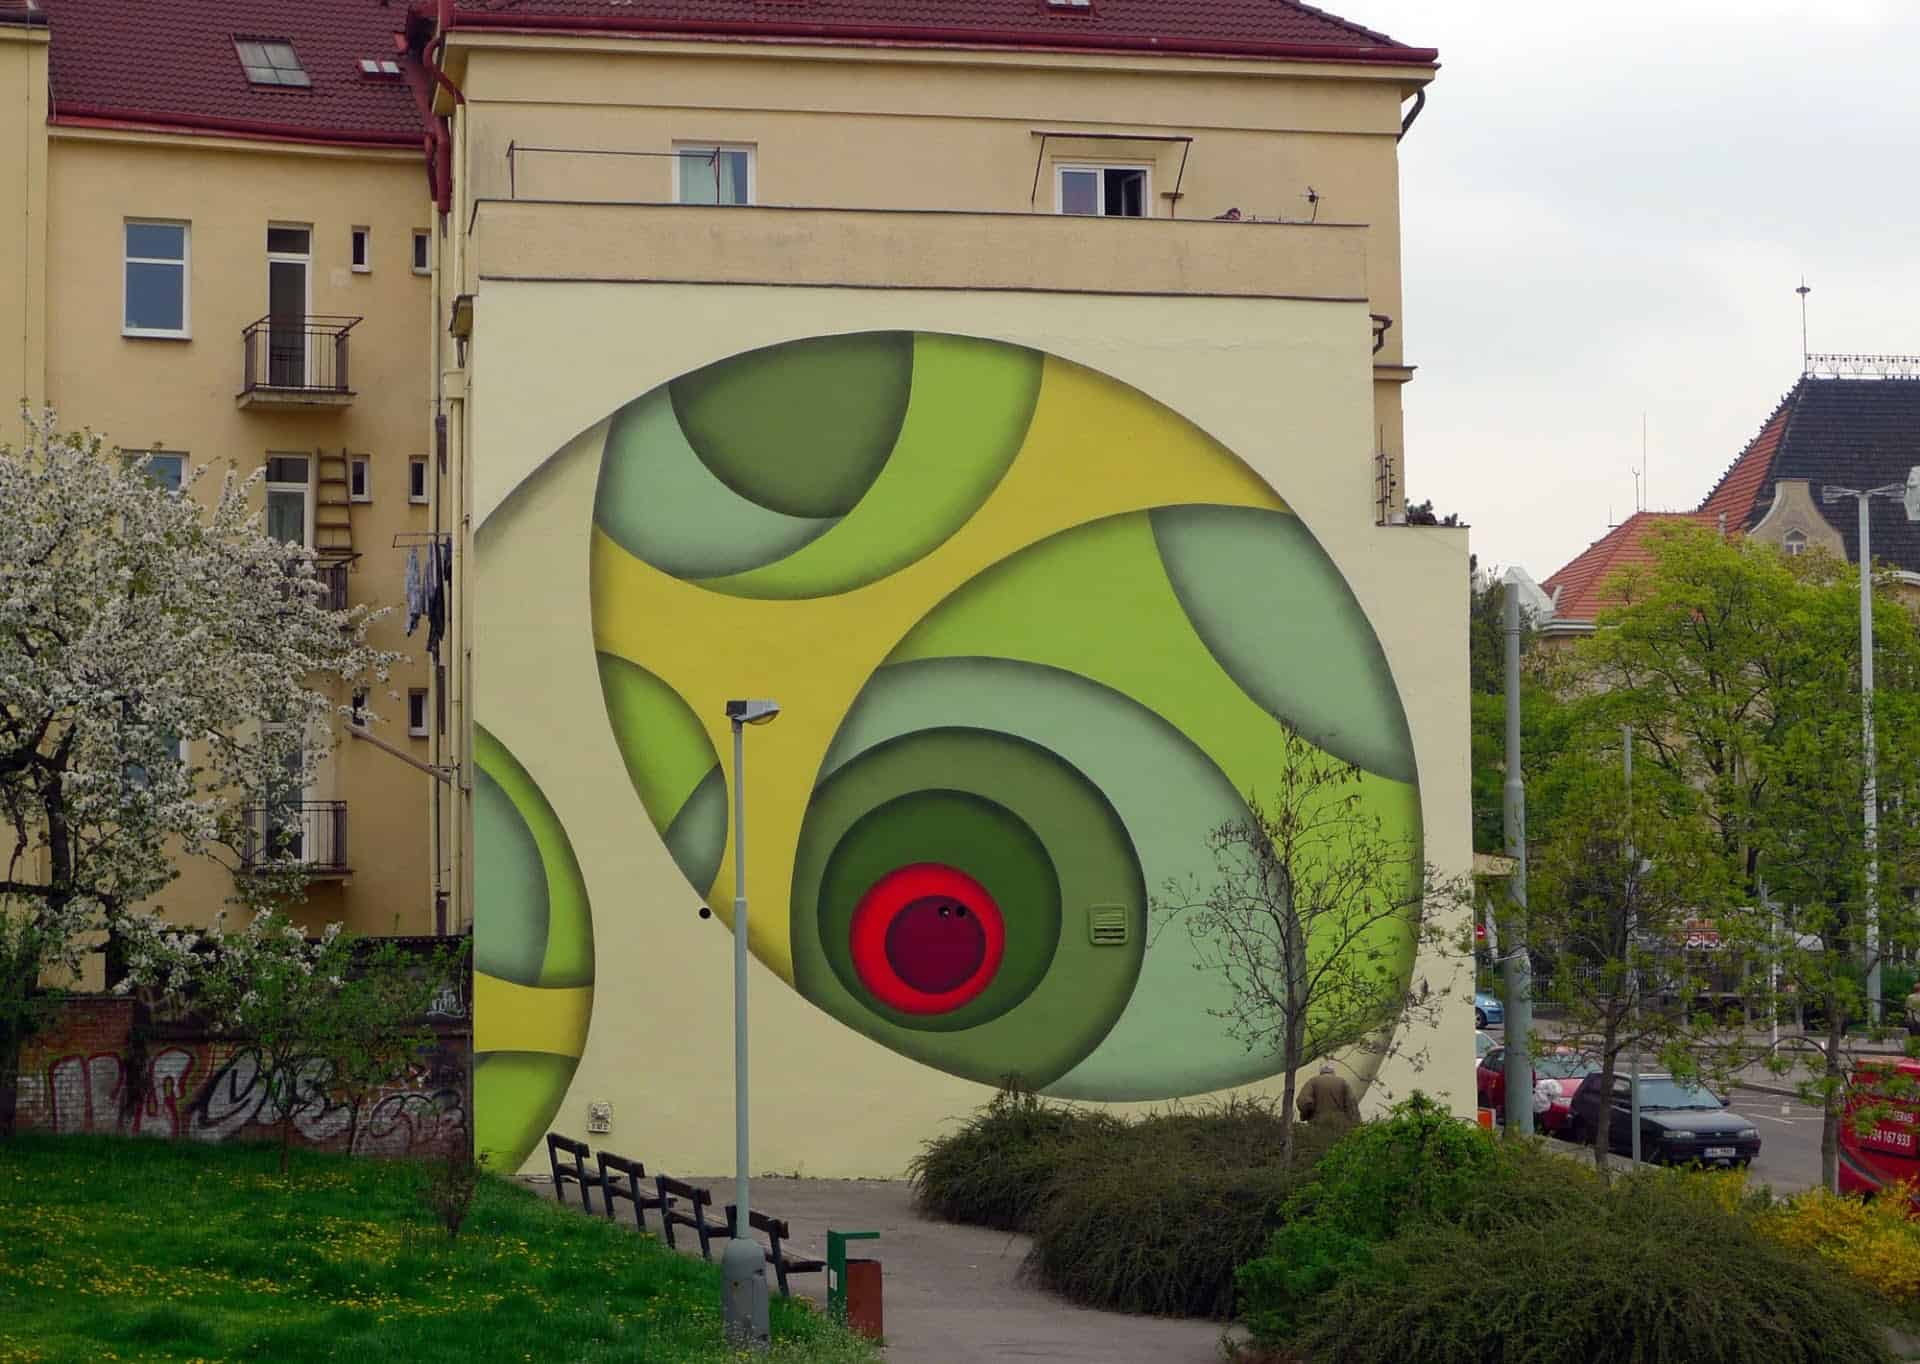 Kleurrijke street art van Jan Kaláb